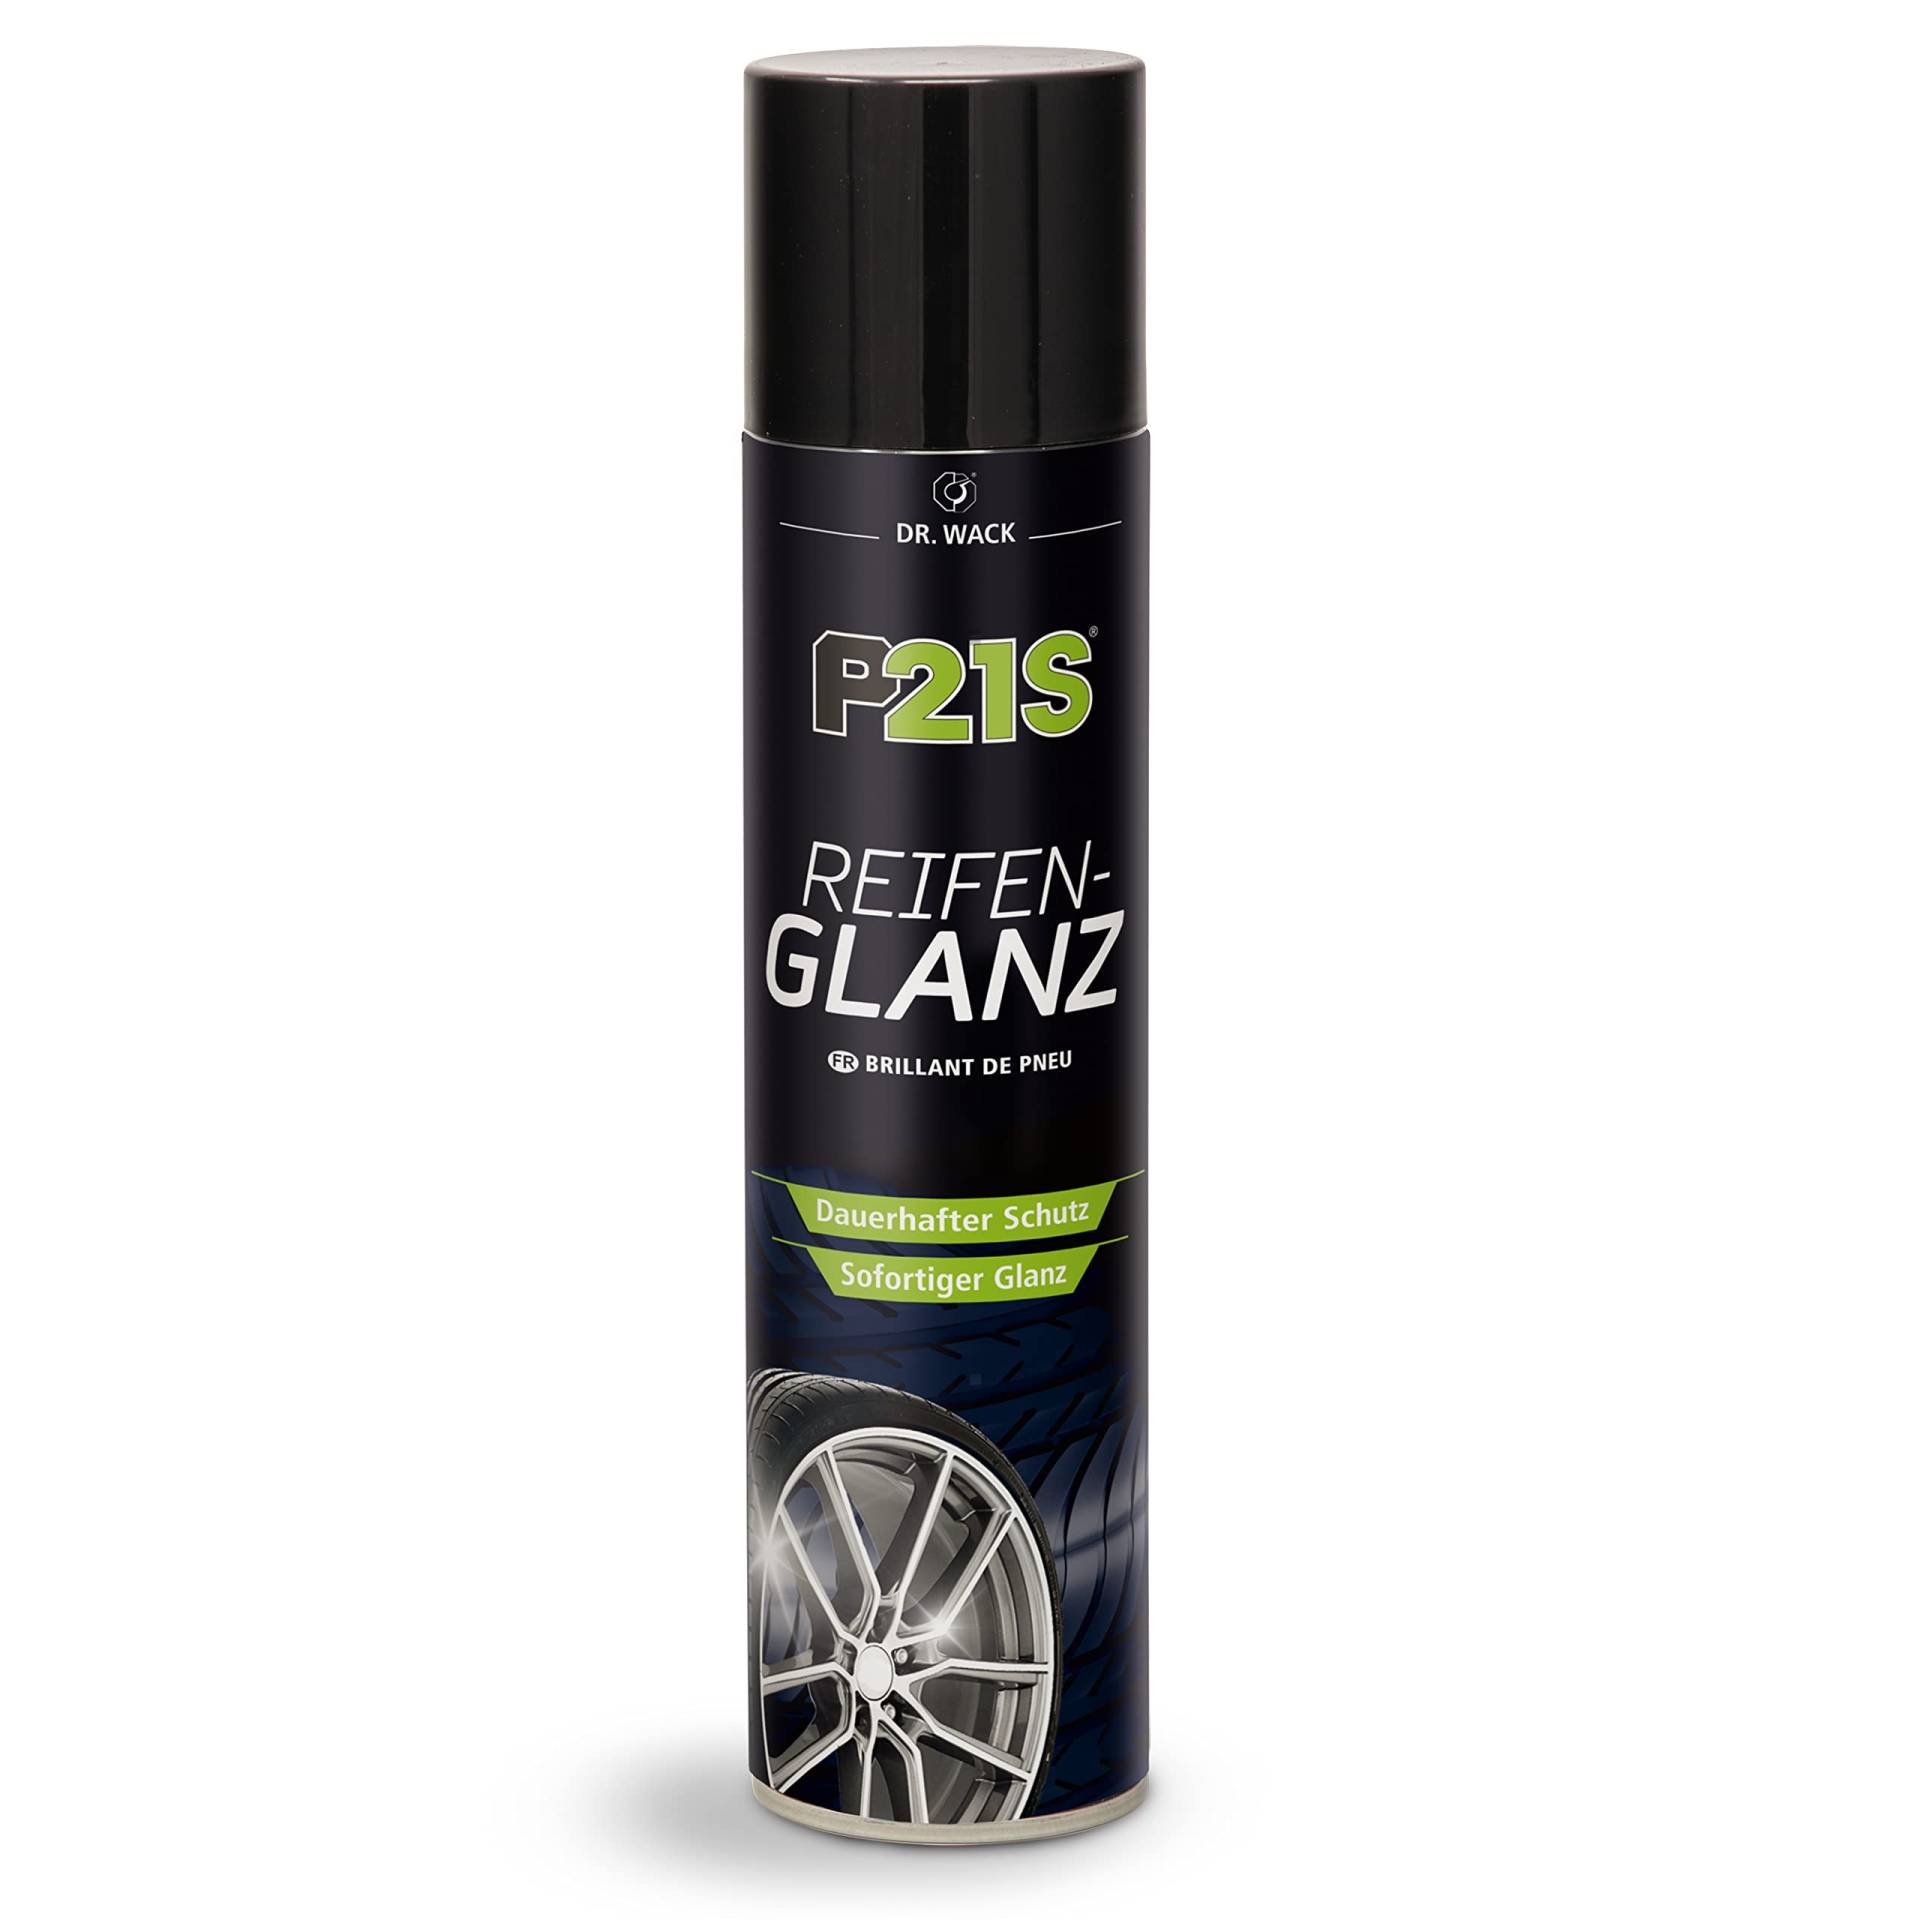 Dr. Wack – P21S Reifen-Glanz 400 ml I Premium Auto-Reifen-Pflege für alle Reifen I Sofort neuer Glanz für verblasste Reifen I Hochwertige Reifenpflege – Made in Germany von DR. WACK